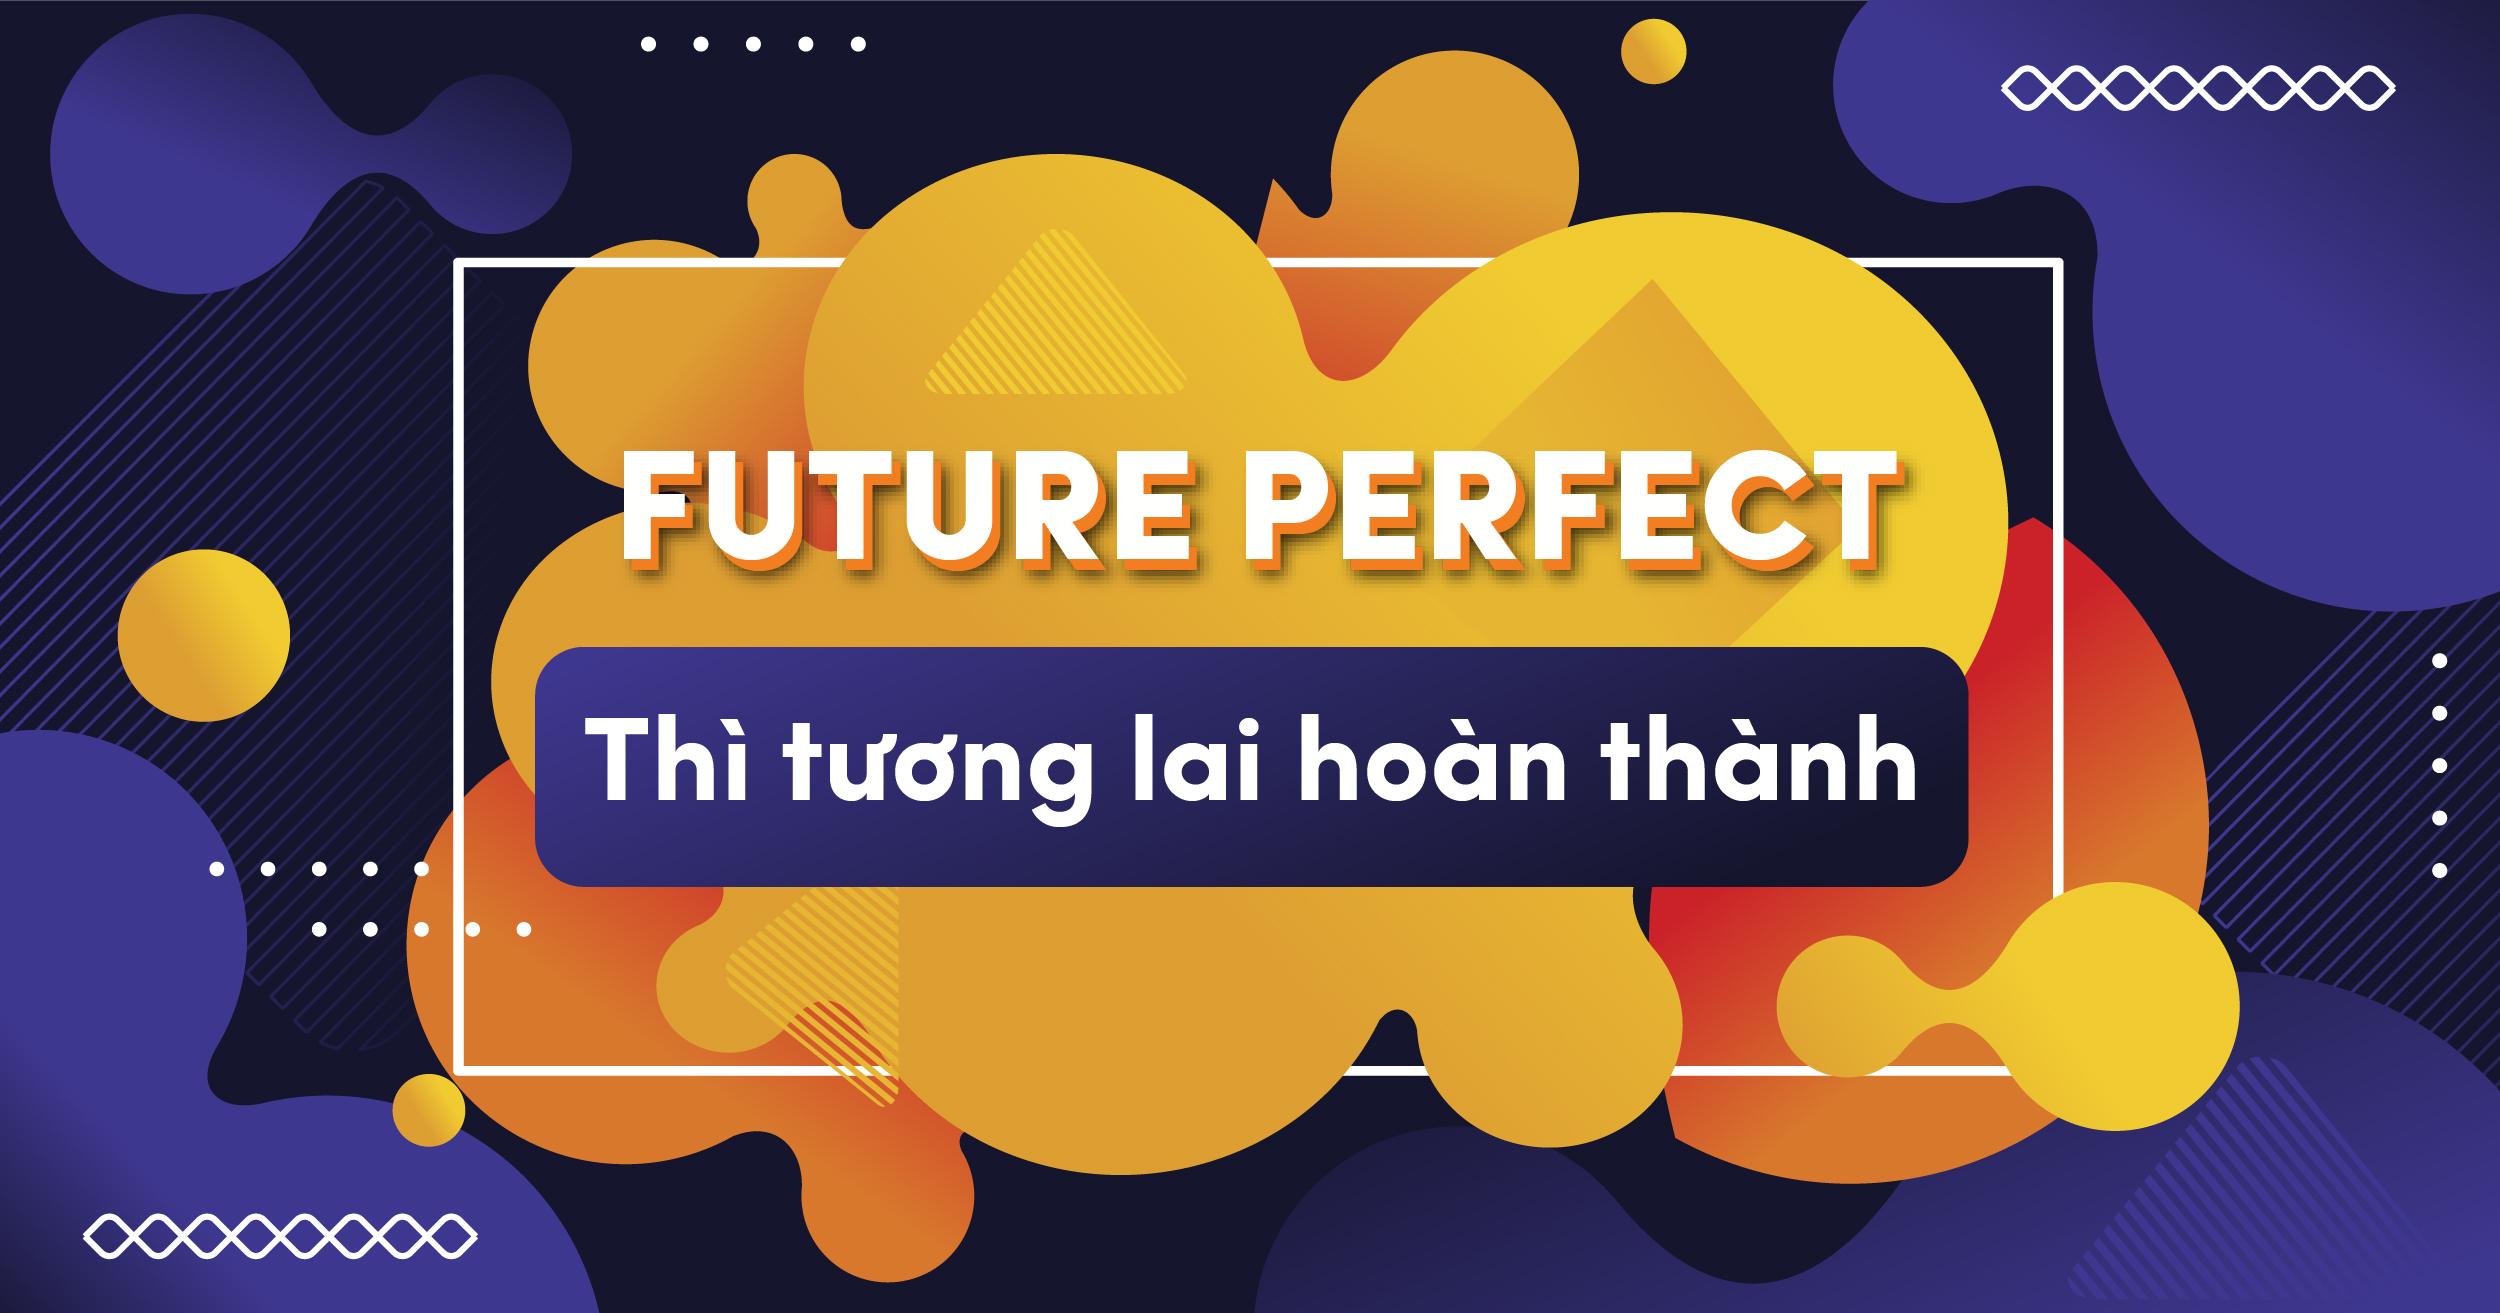 “Những điều nên biết về Thì tương lai hoàn thành (Future Perfect)” đã bị khóa Những điều nên biết về Thì tương lai hoàn thành (Future Perfect)